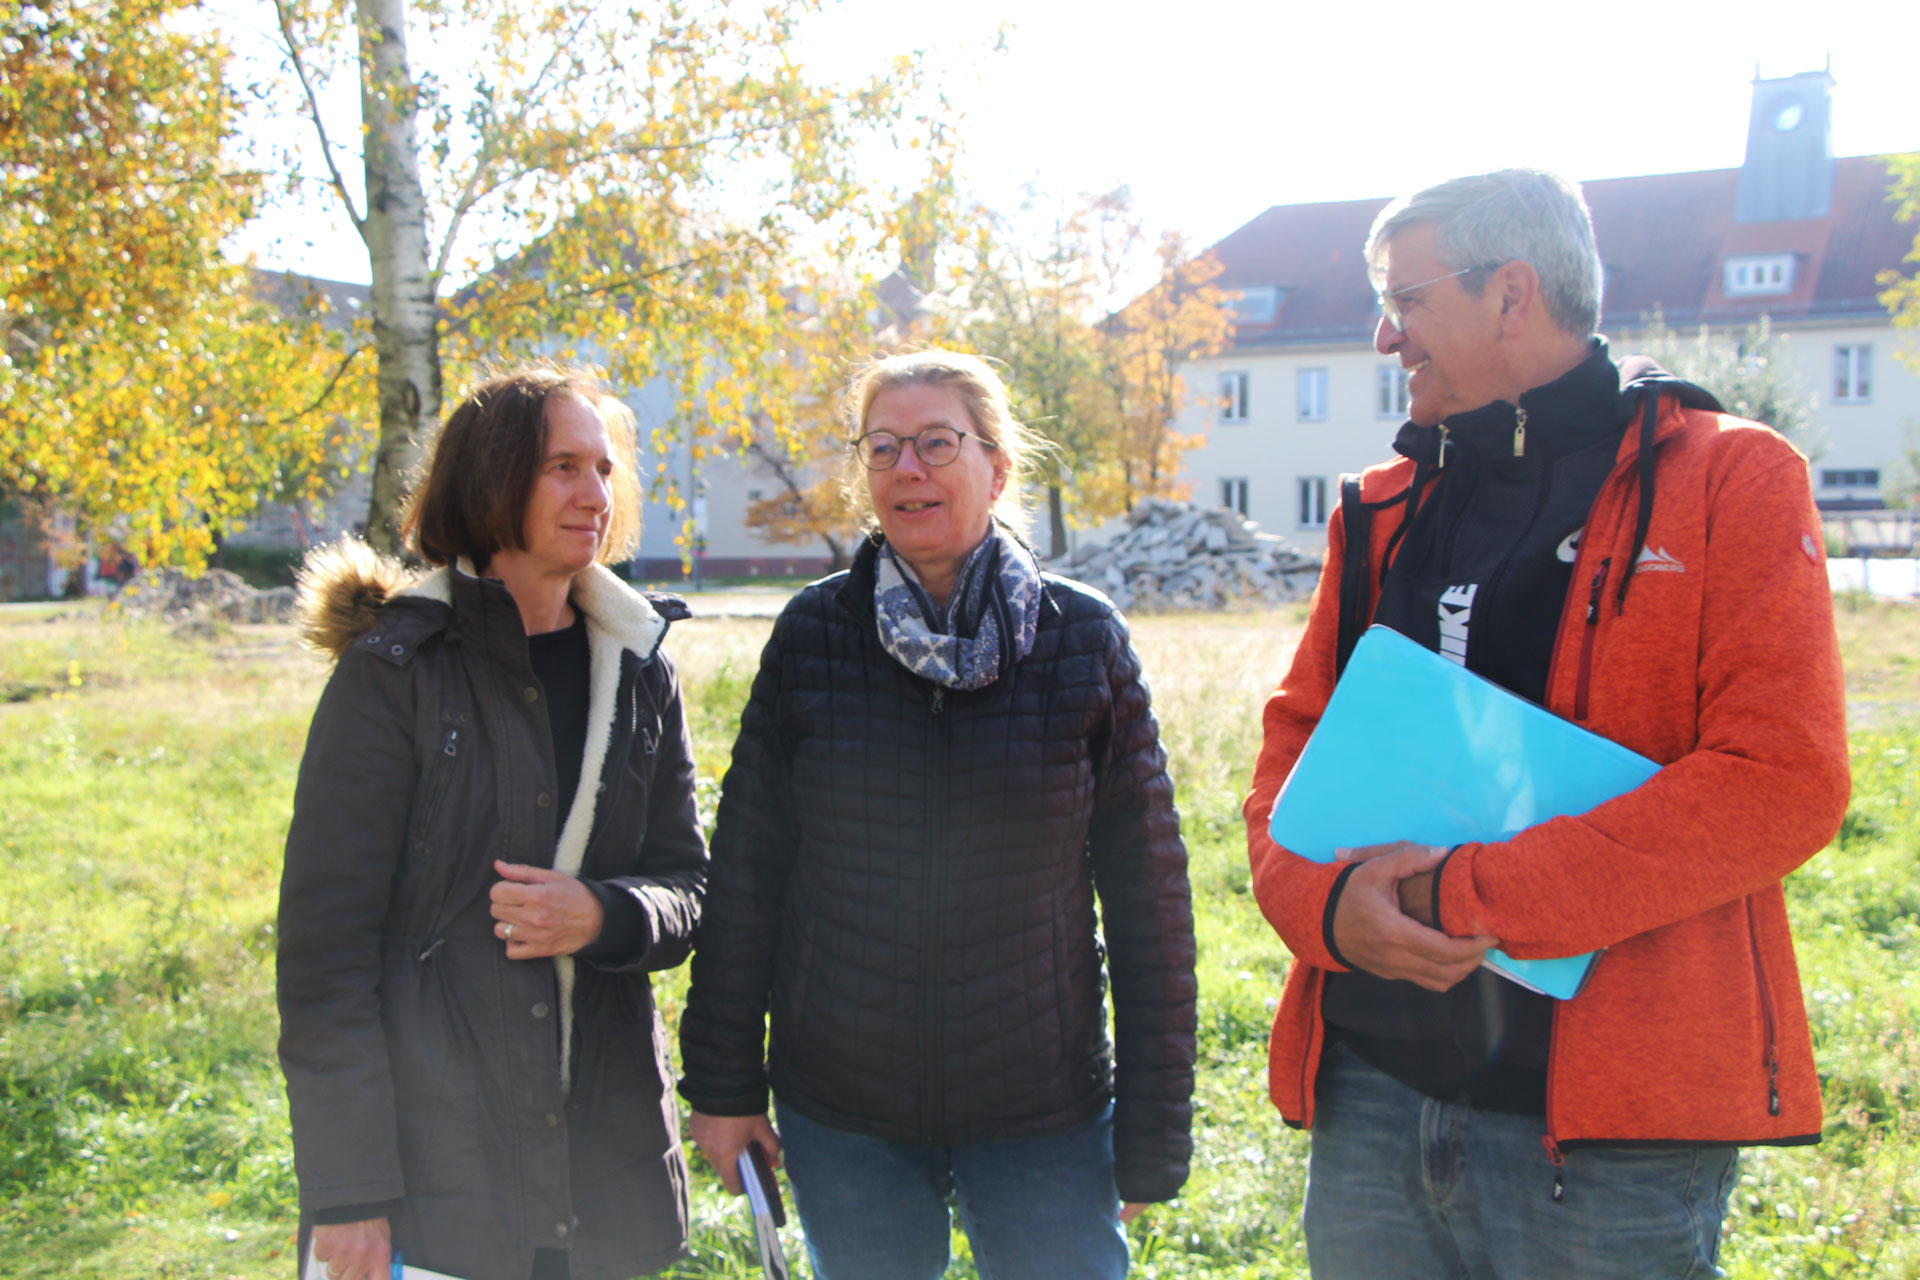 Marion Hardel, Patrizia Reicherl und Matthias Schreckenbach stehen auf der Mensawiese der FH Potsdam. Im Hintergrund sind die alten Hochschulgebäude zu sehen.